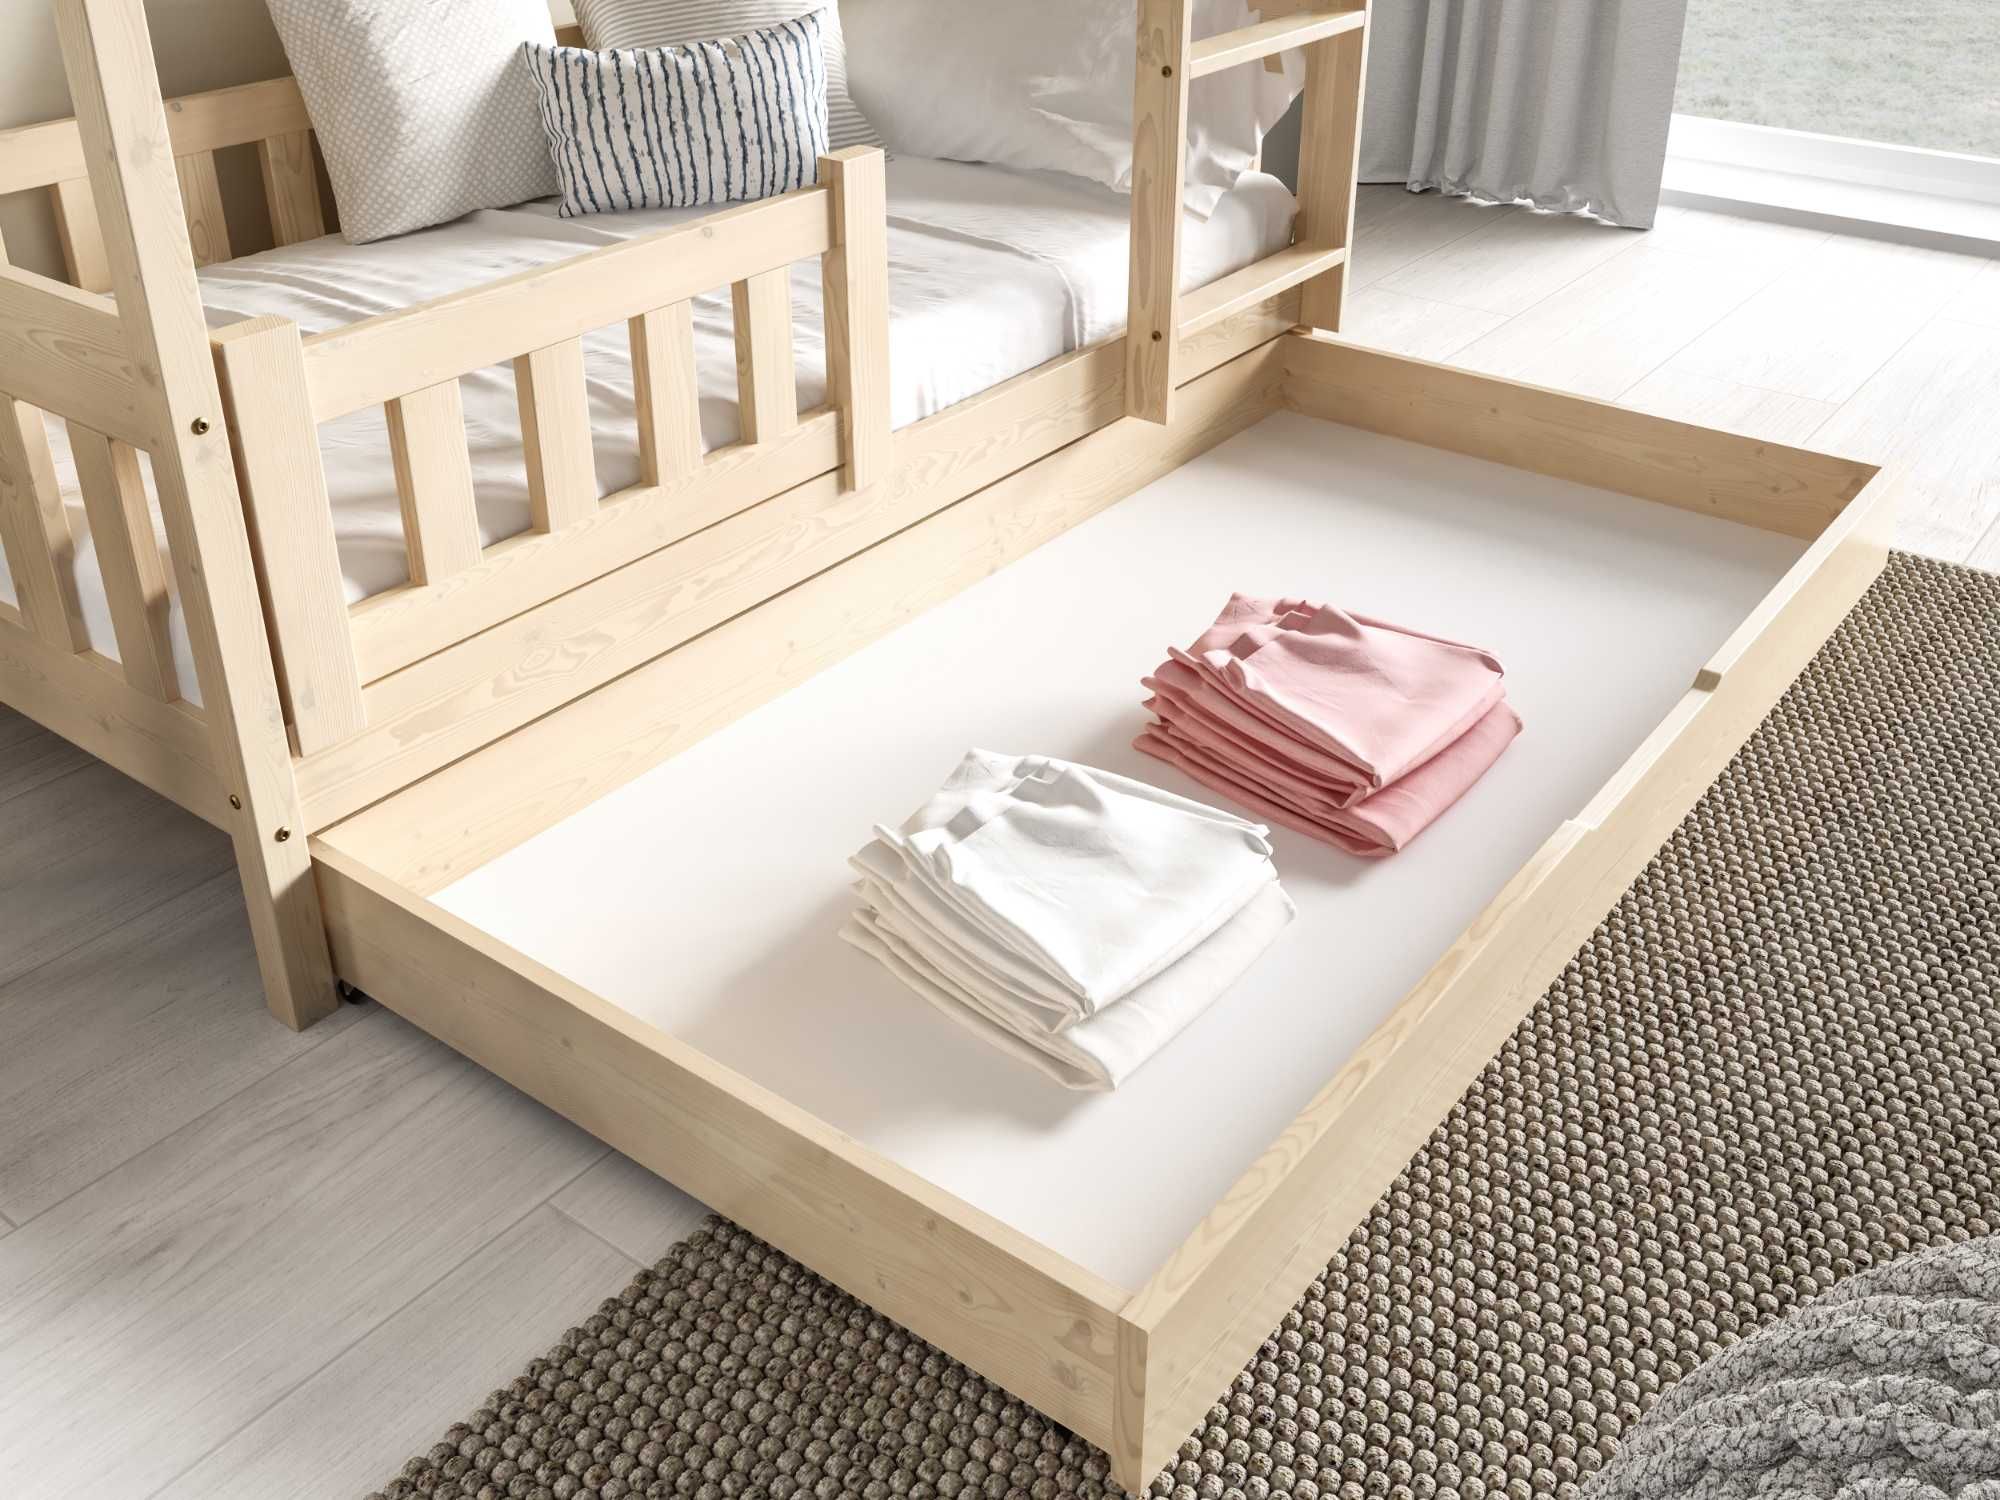 Łóżko dla 2 dzieci piętrowe ZUZIA - materace gratis